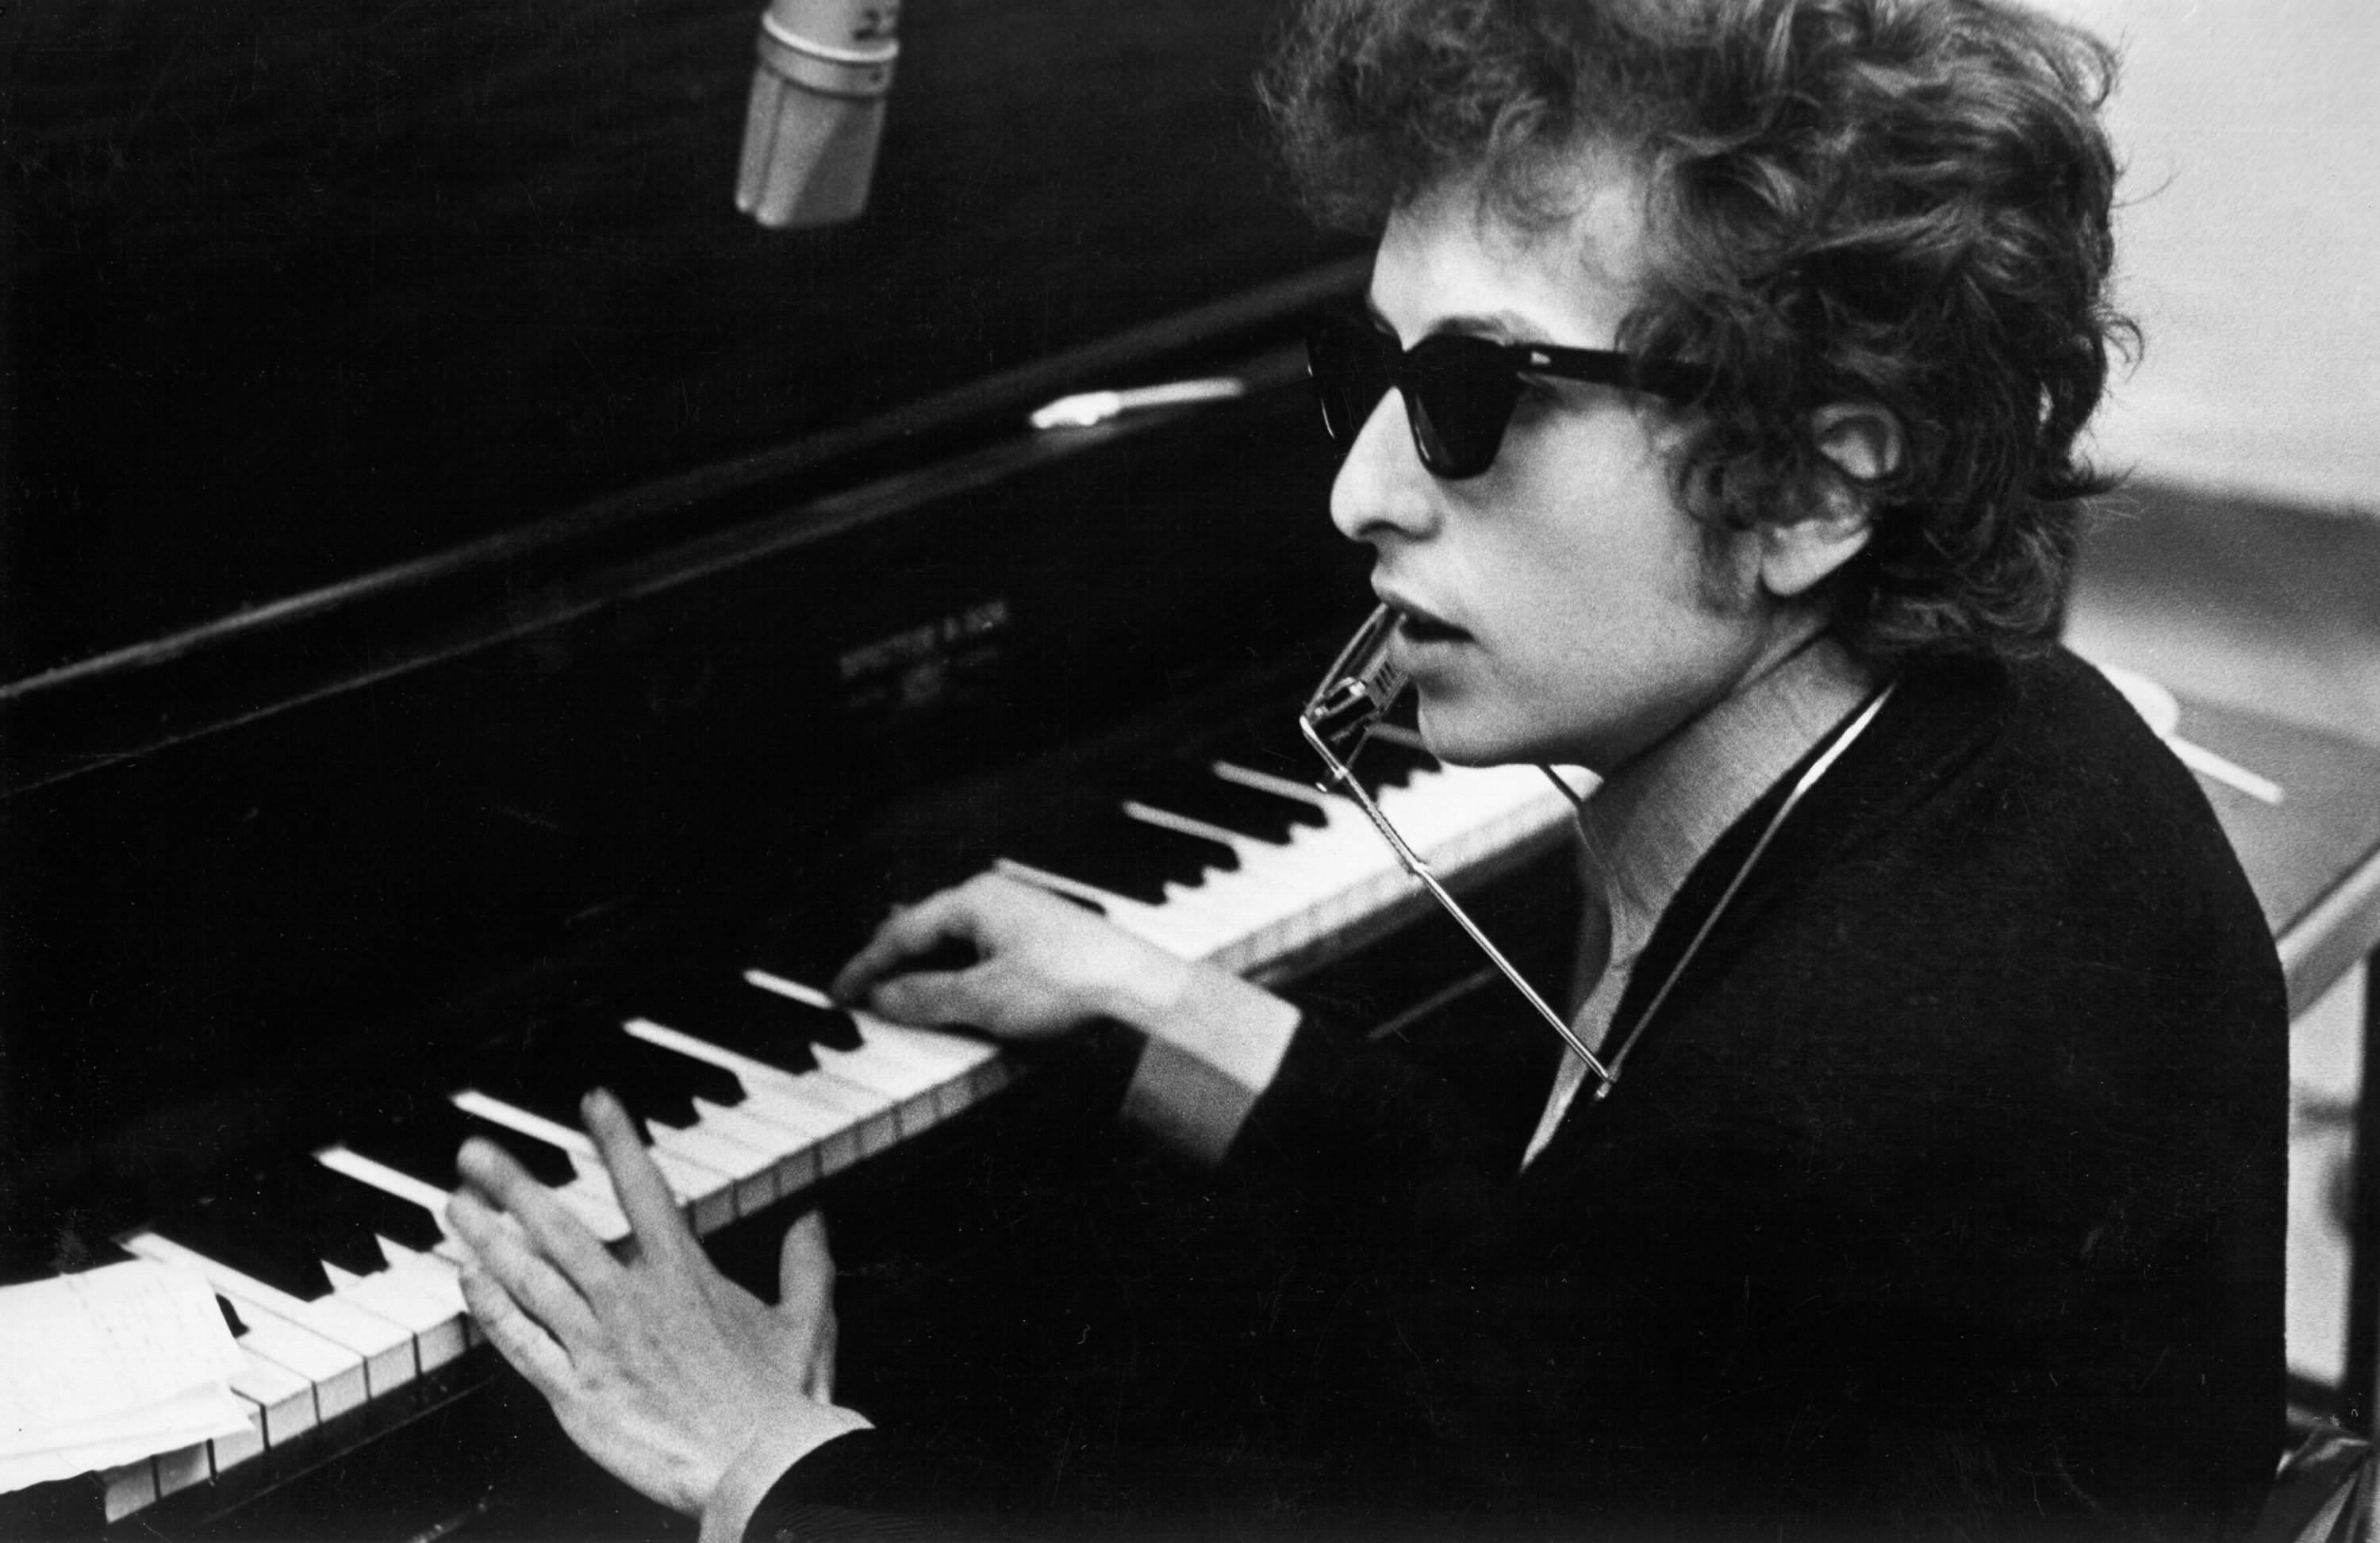 Bob Dylan at a piano